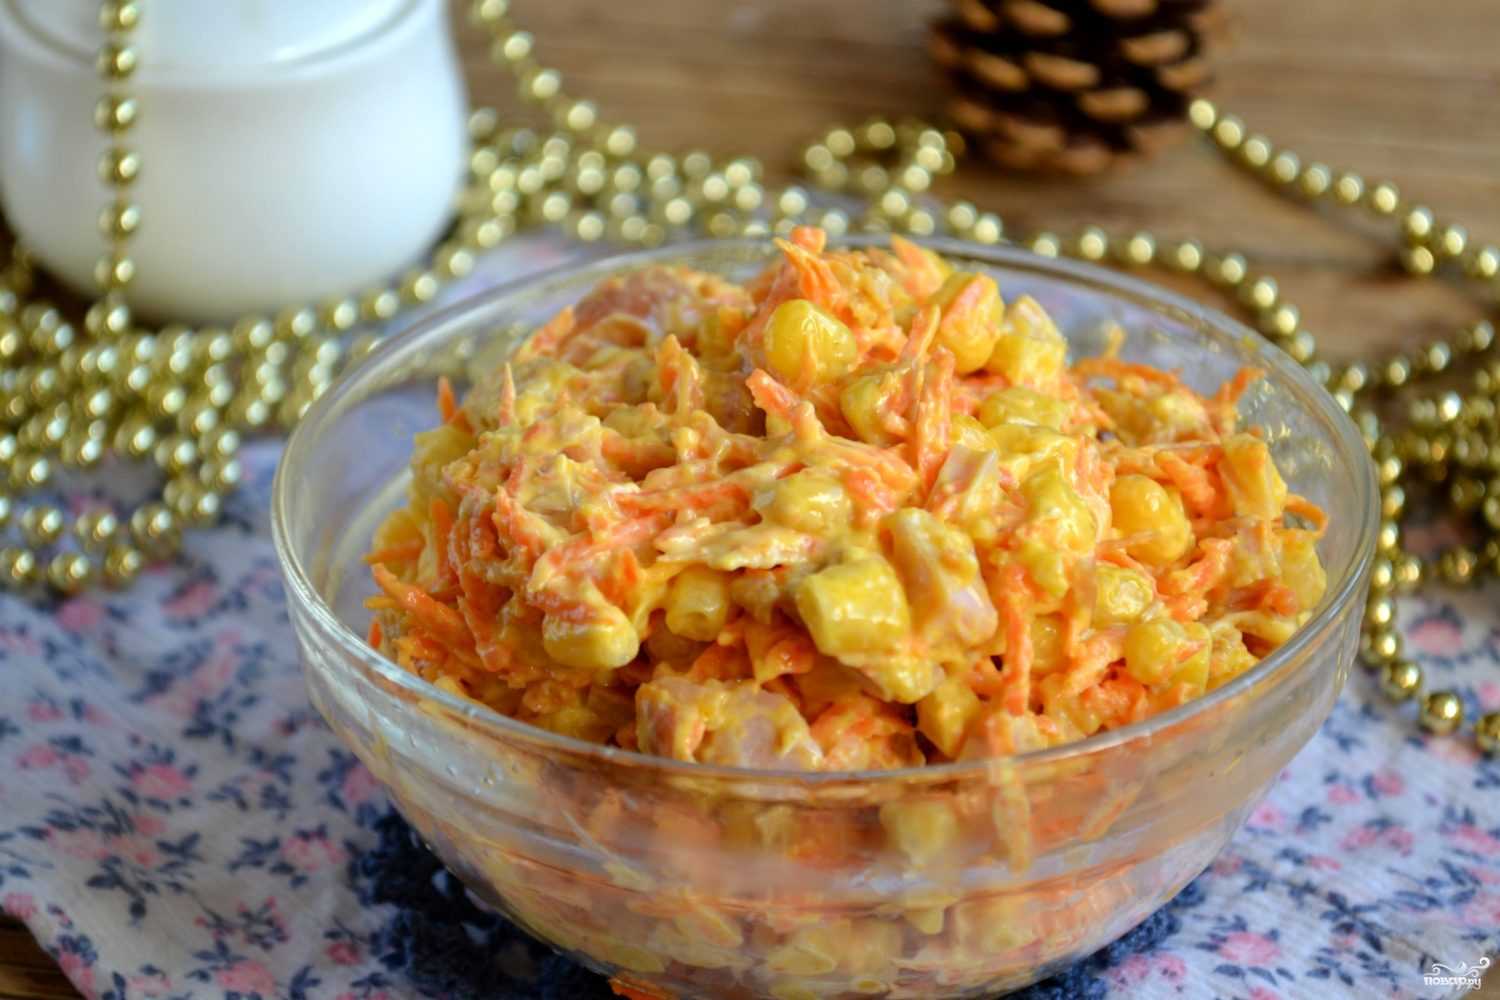 Снова ищешь рецепт вкусного салата Советуем попробовать салаты с копченой курицей и корейской морковью Они сытные, ароматные, сочные и при этом совершенно не хлопотные в приготовлении